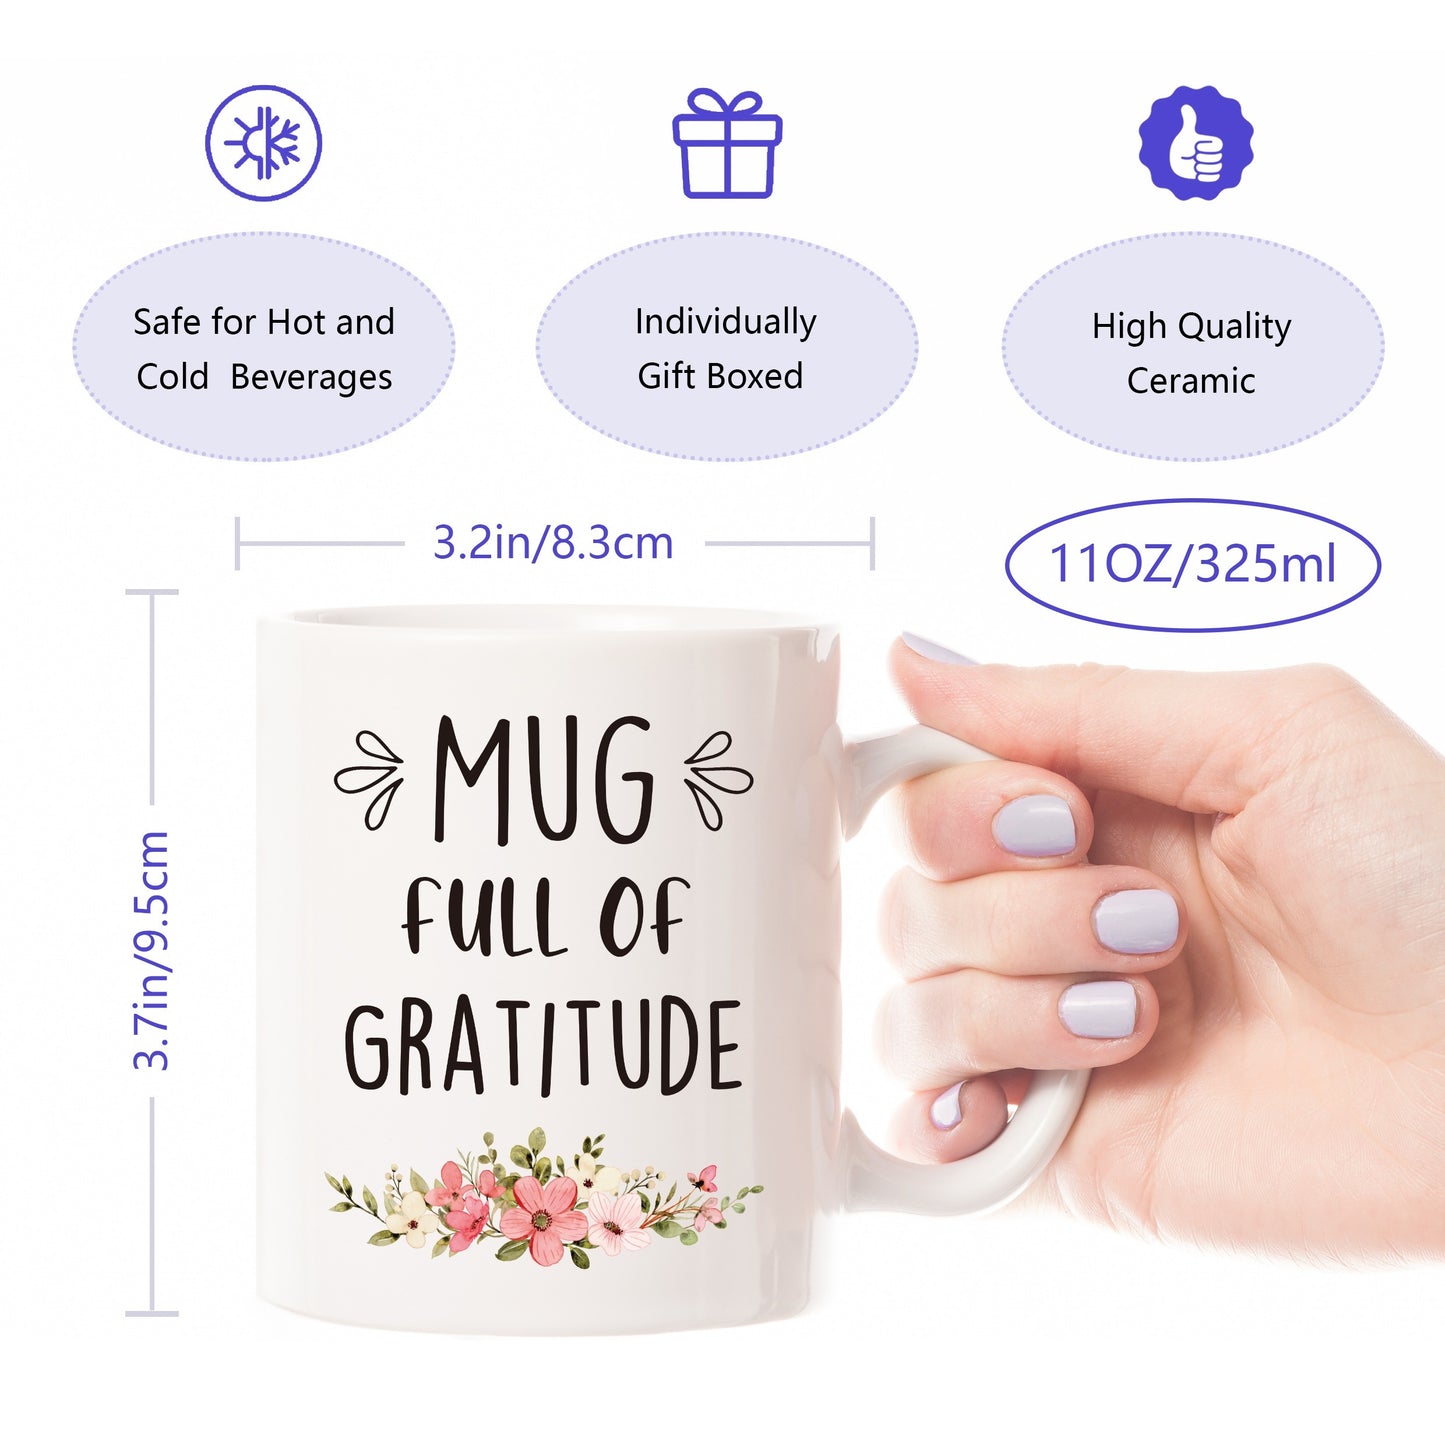 Mug Full Of Gratitude Christian White Ceramic Mug claimedbygoddesigns